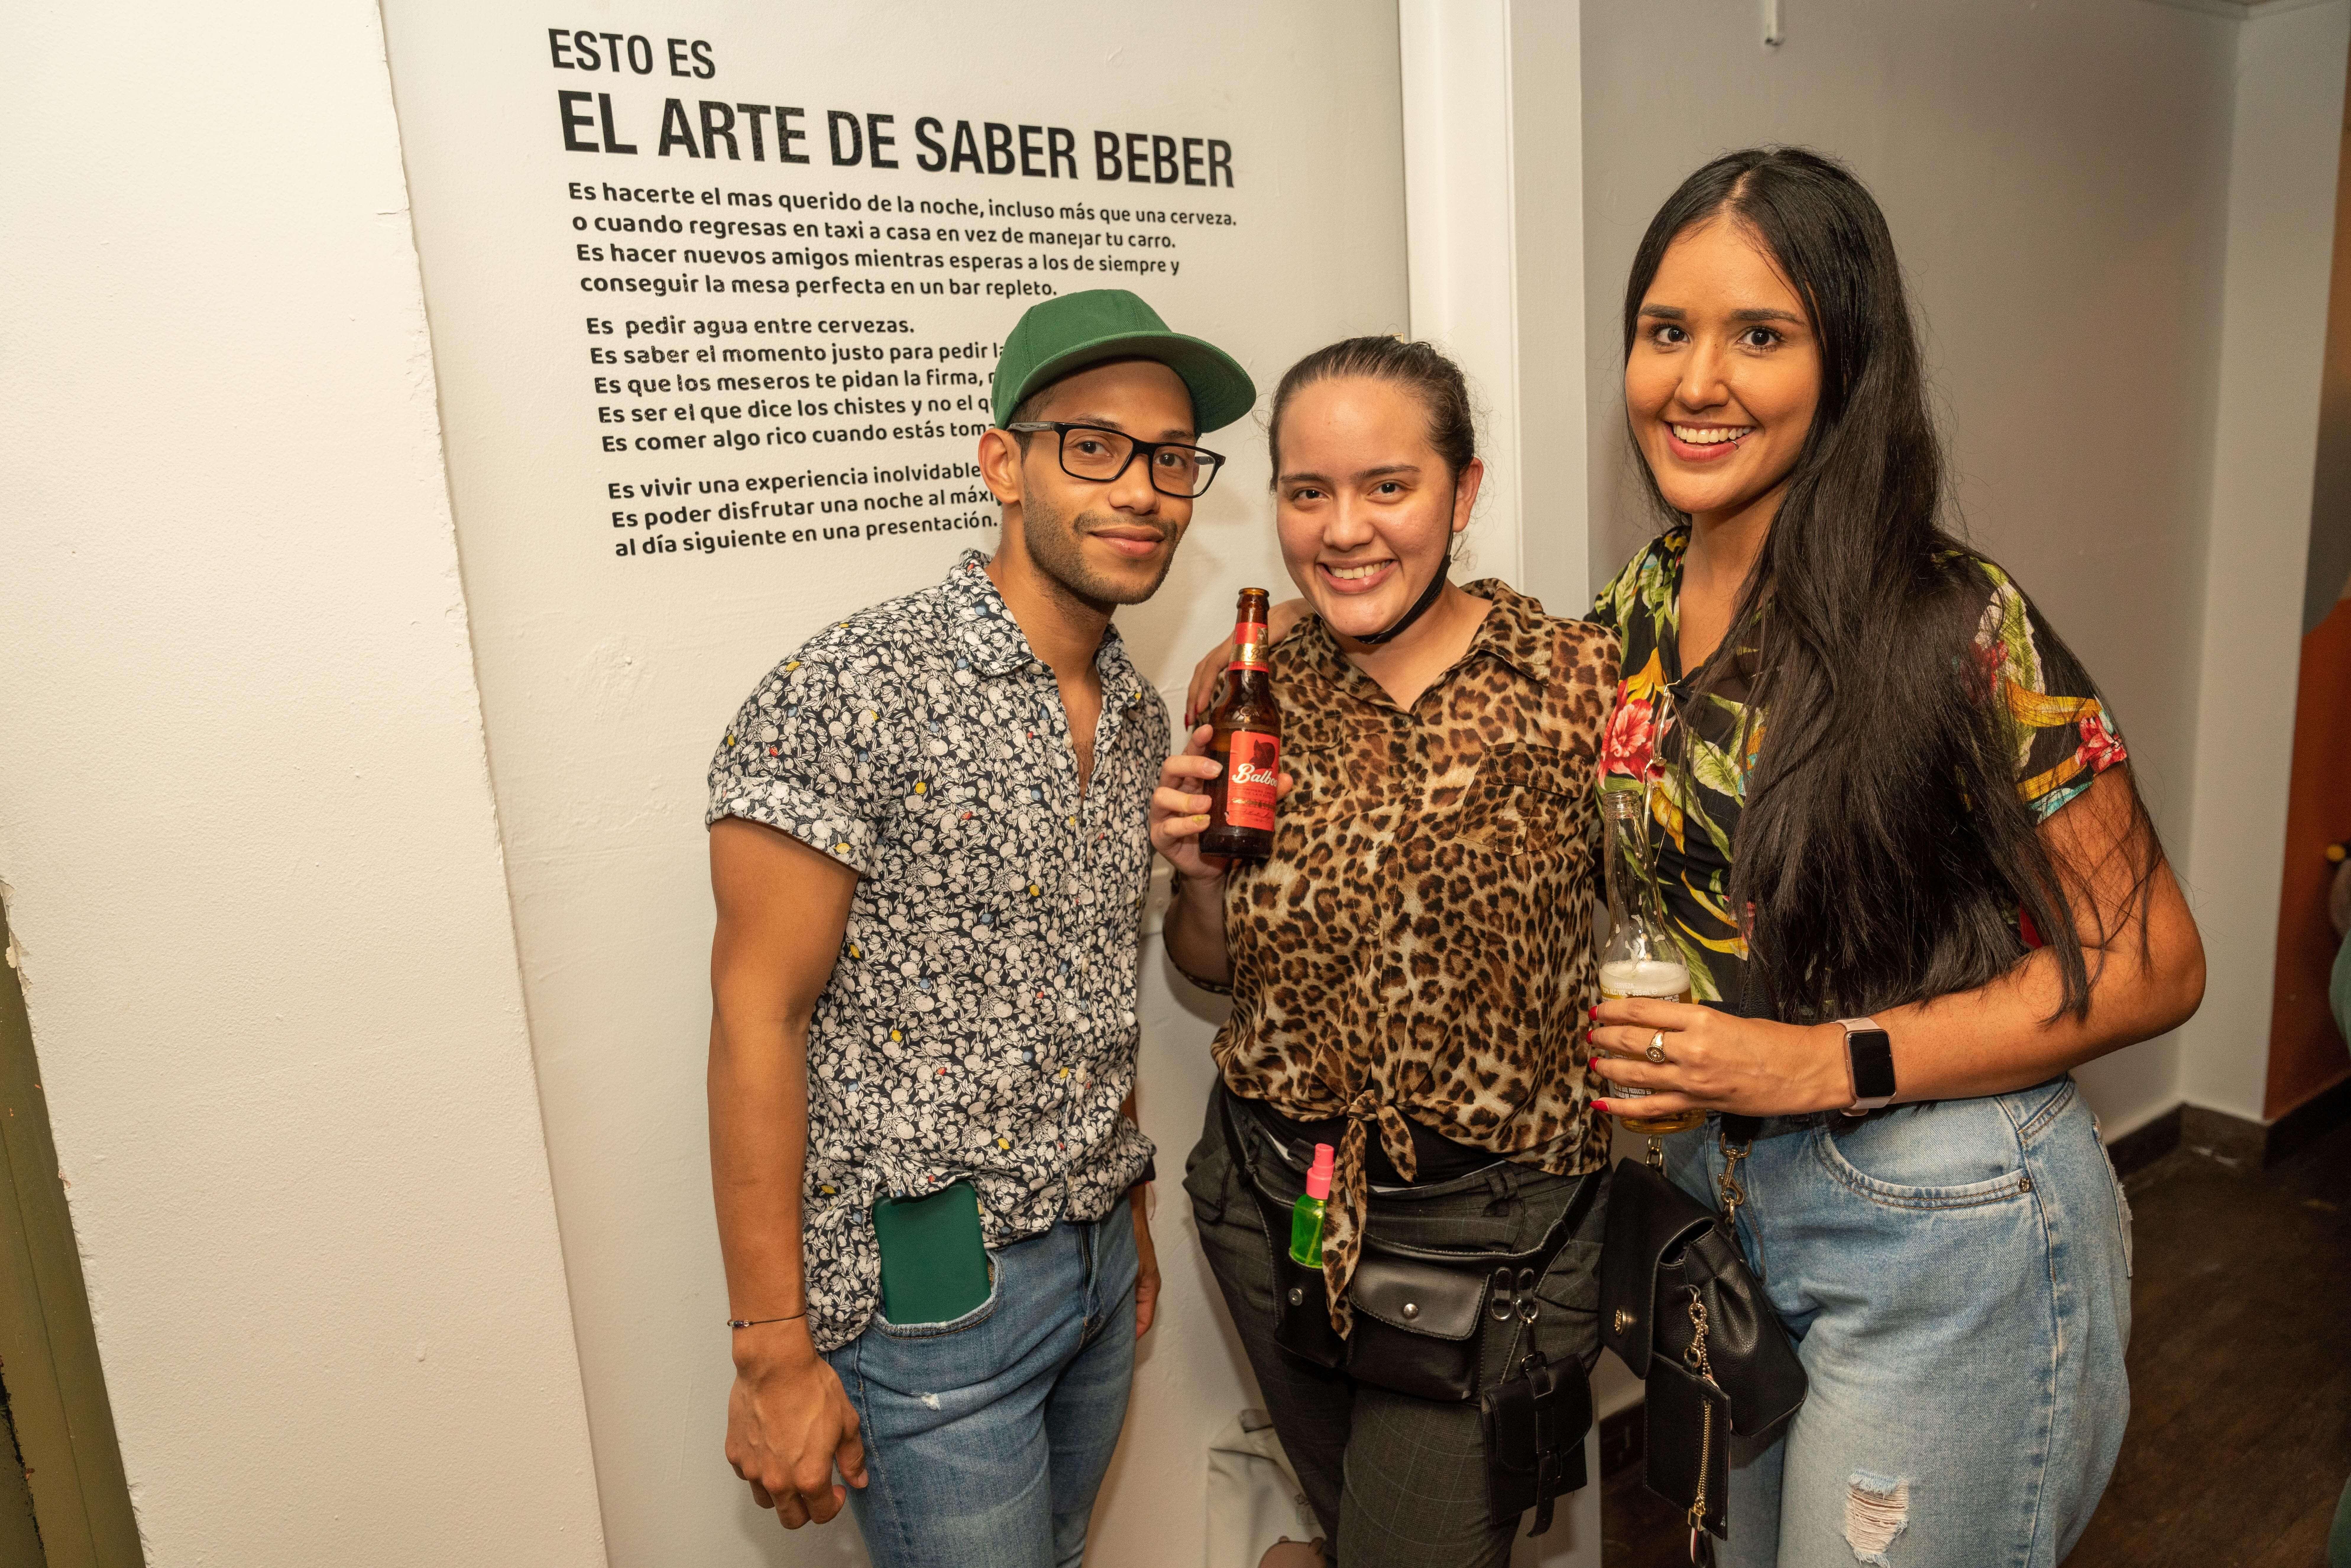 El Arte de Saber Beber cervecería nacional panamá